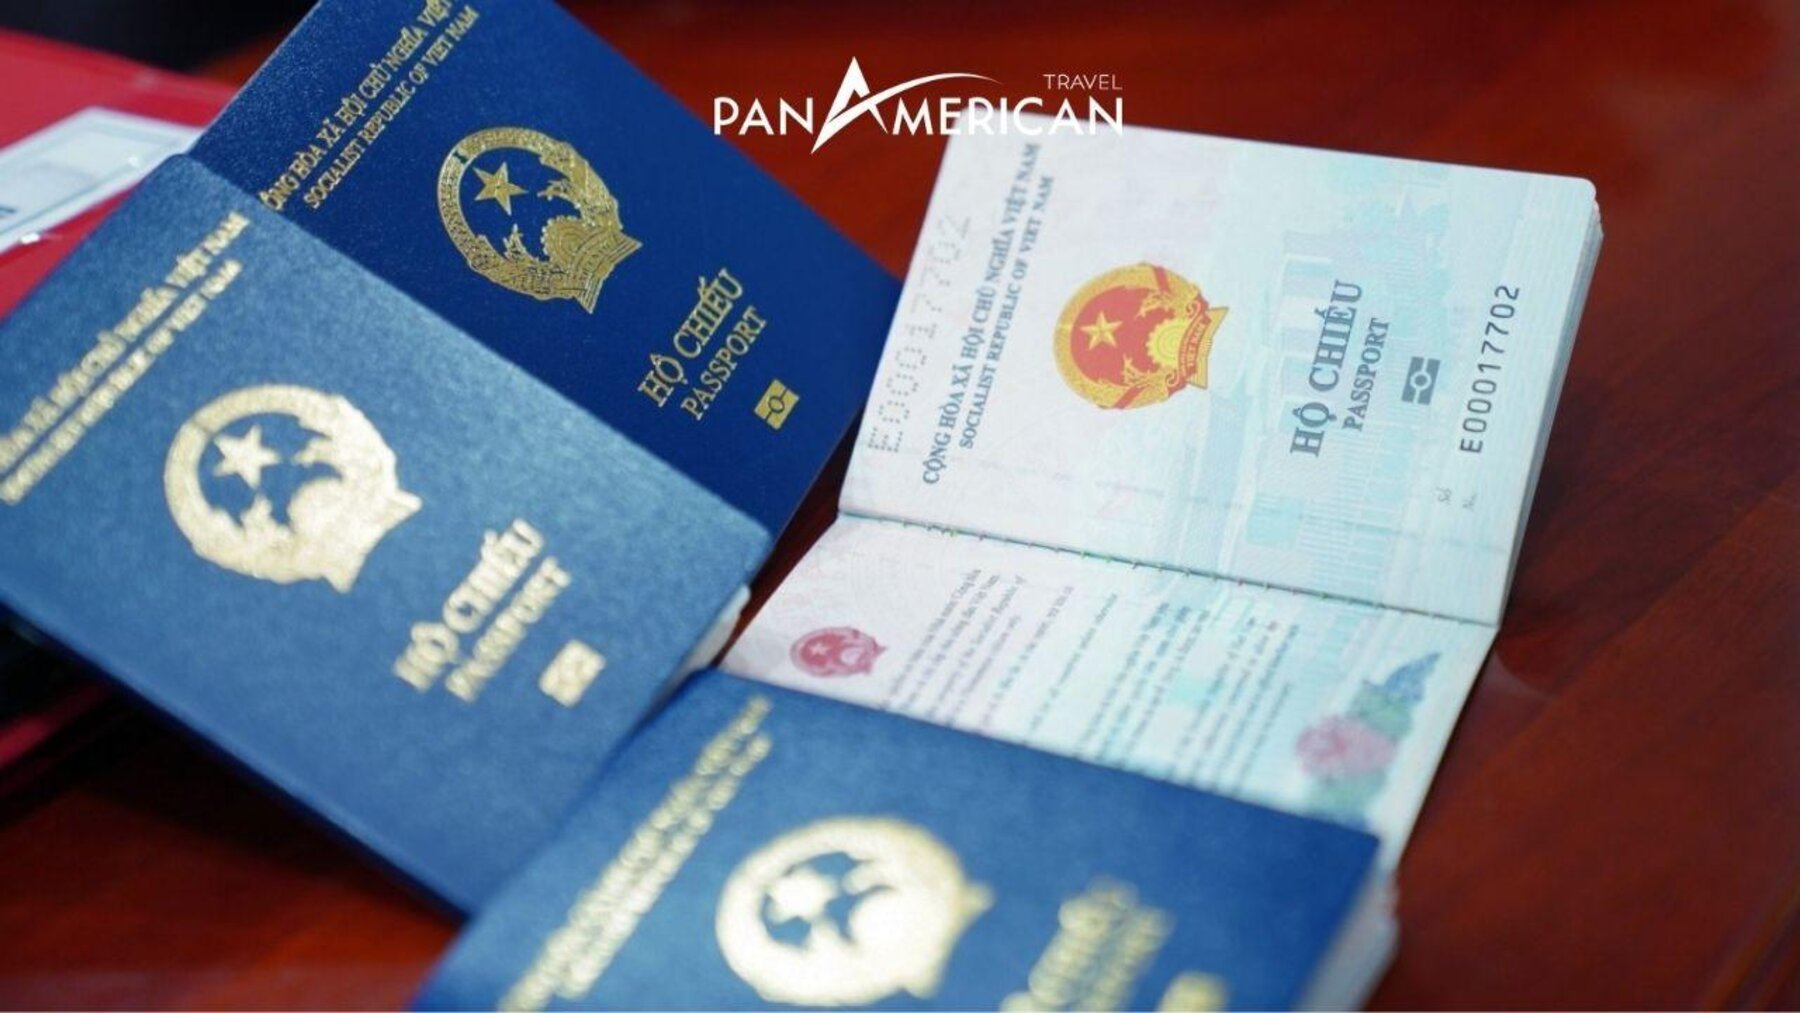 Nâng hạng hộ chiếu cùng Pan Visa